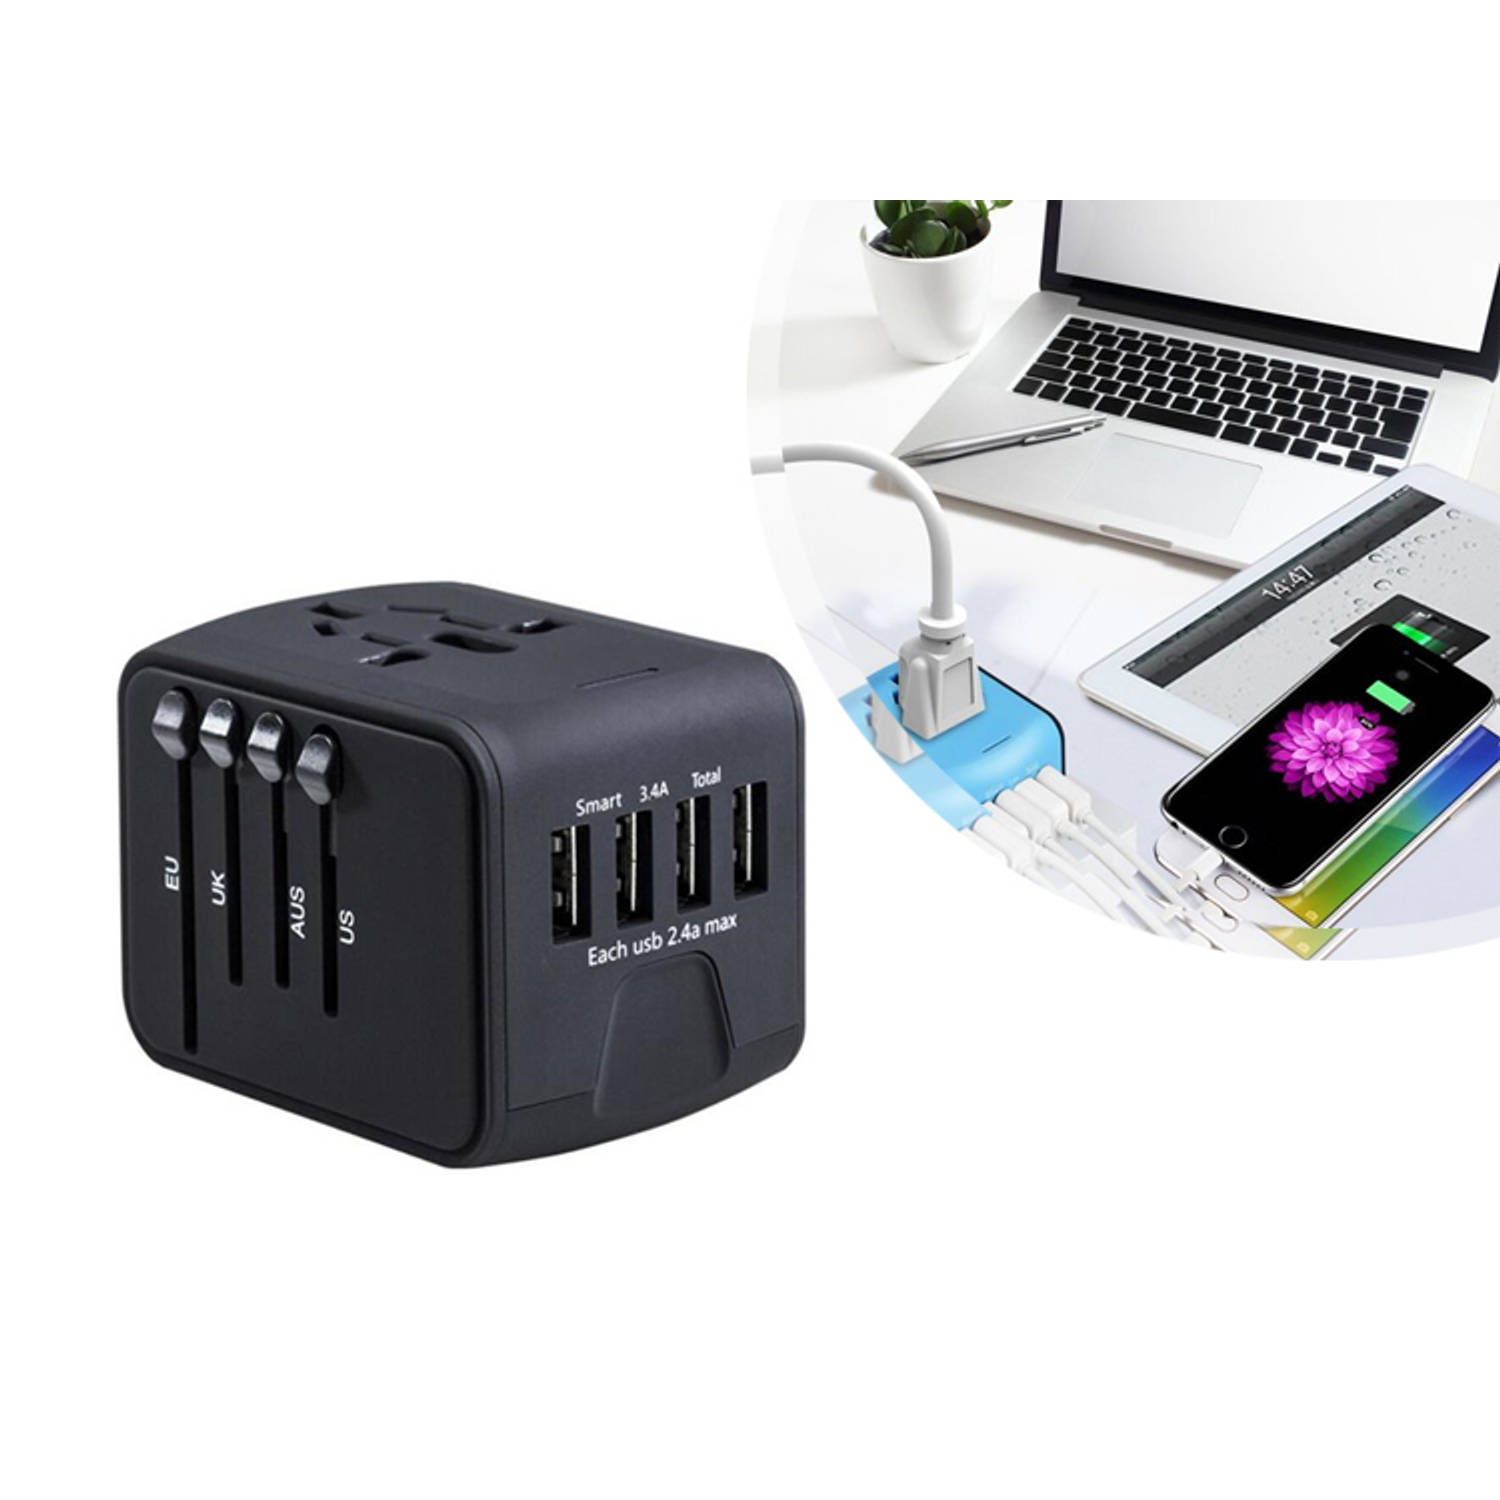 Universele Wereldstekker 4 USB Poorten - Internationale Reisstekker voor 150+ landen - Zwart | Blokker